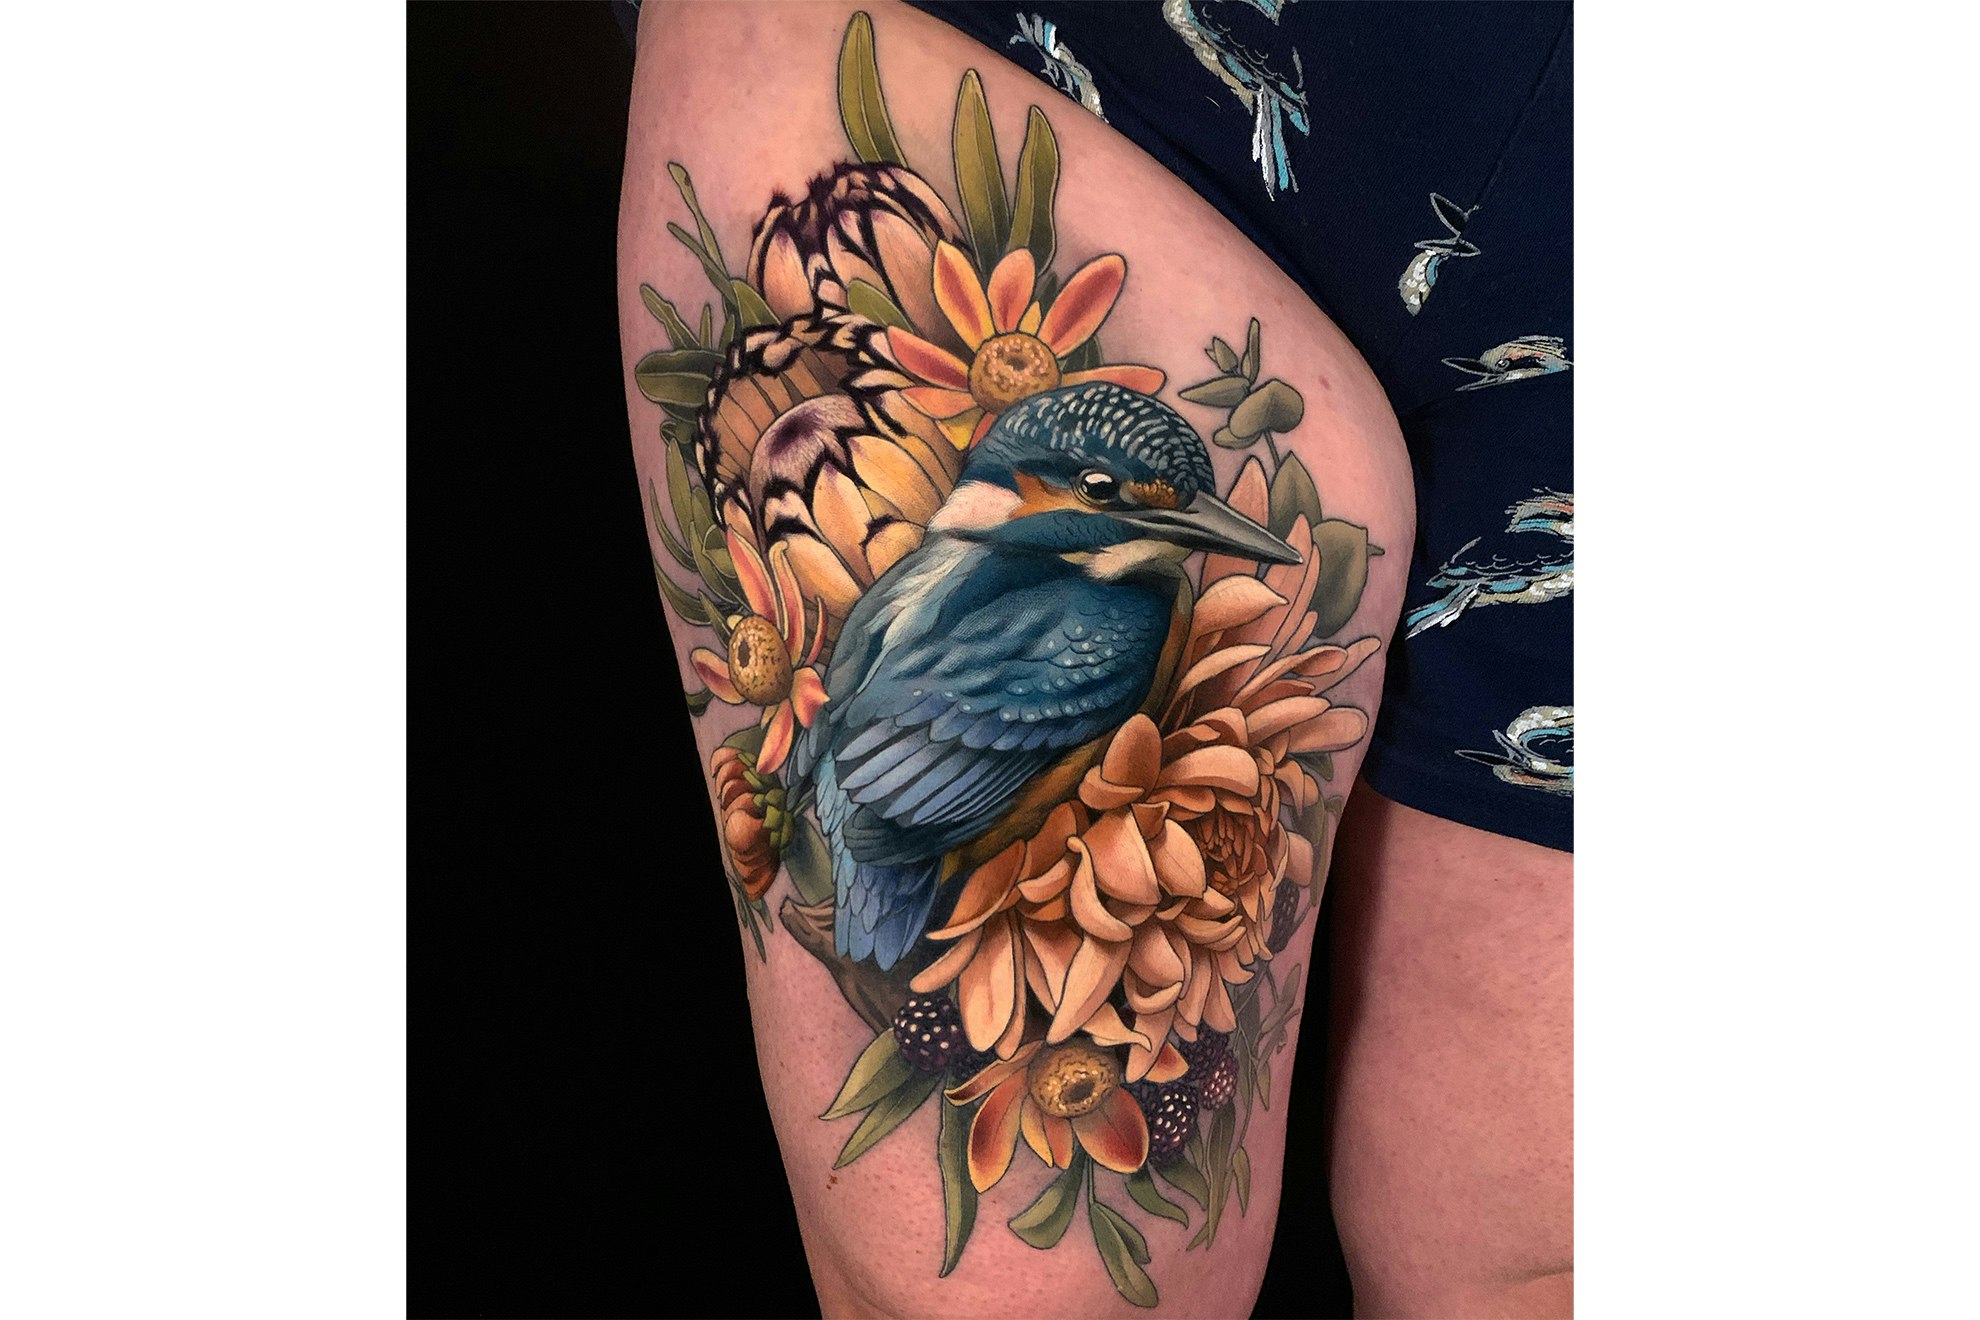 Kingfisher by Nhatbe | Kingfisher tattoo, B tattoo, Black tattoos